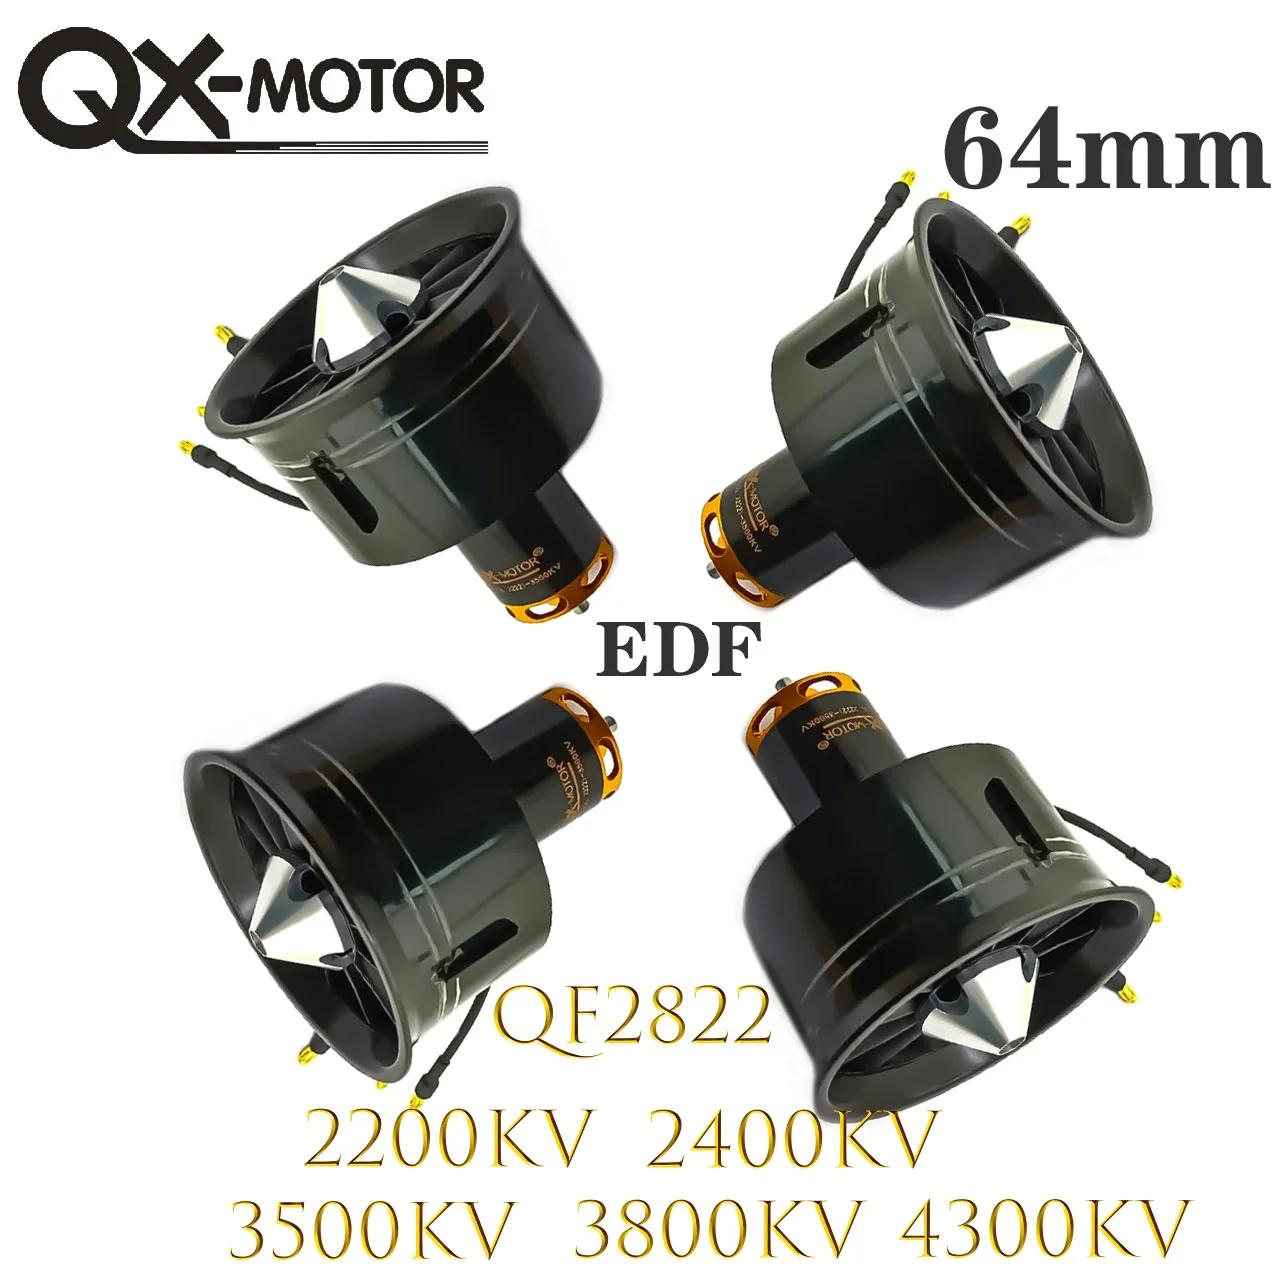 QX-MOTOR EDF Ʈ ǳ,   峭 귯ø , QF2822, 2200KV, 2400KV, 3500KV, 3800KV, 4300KV, 64mm, 12 ̵